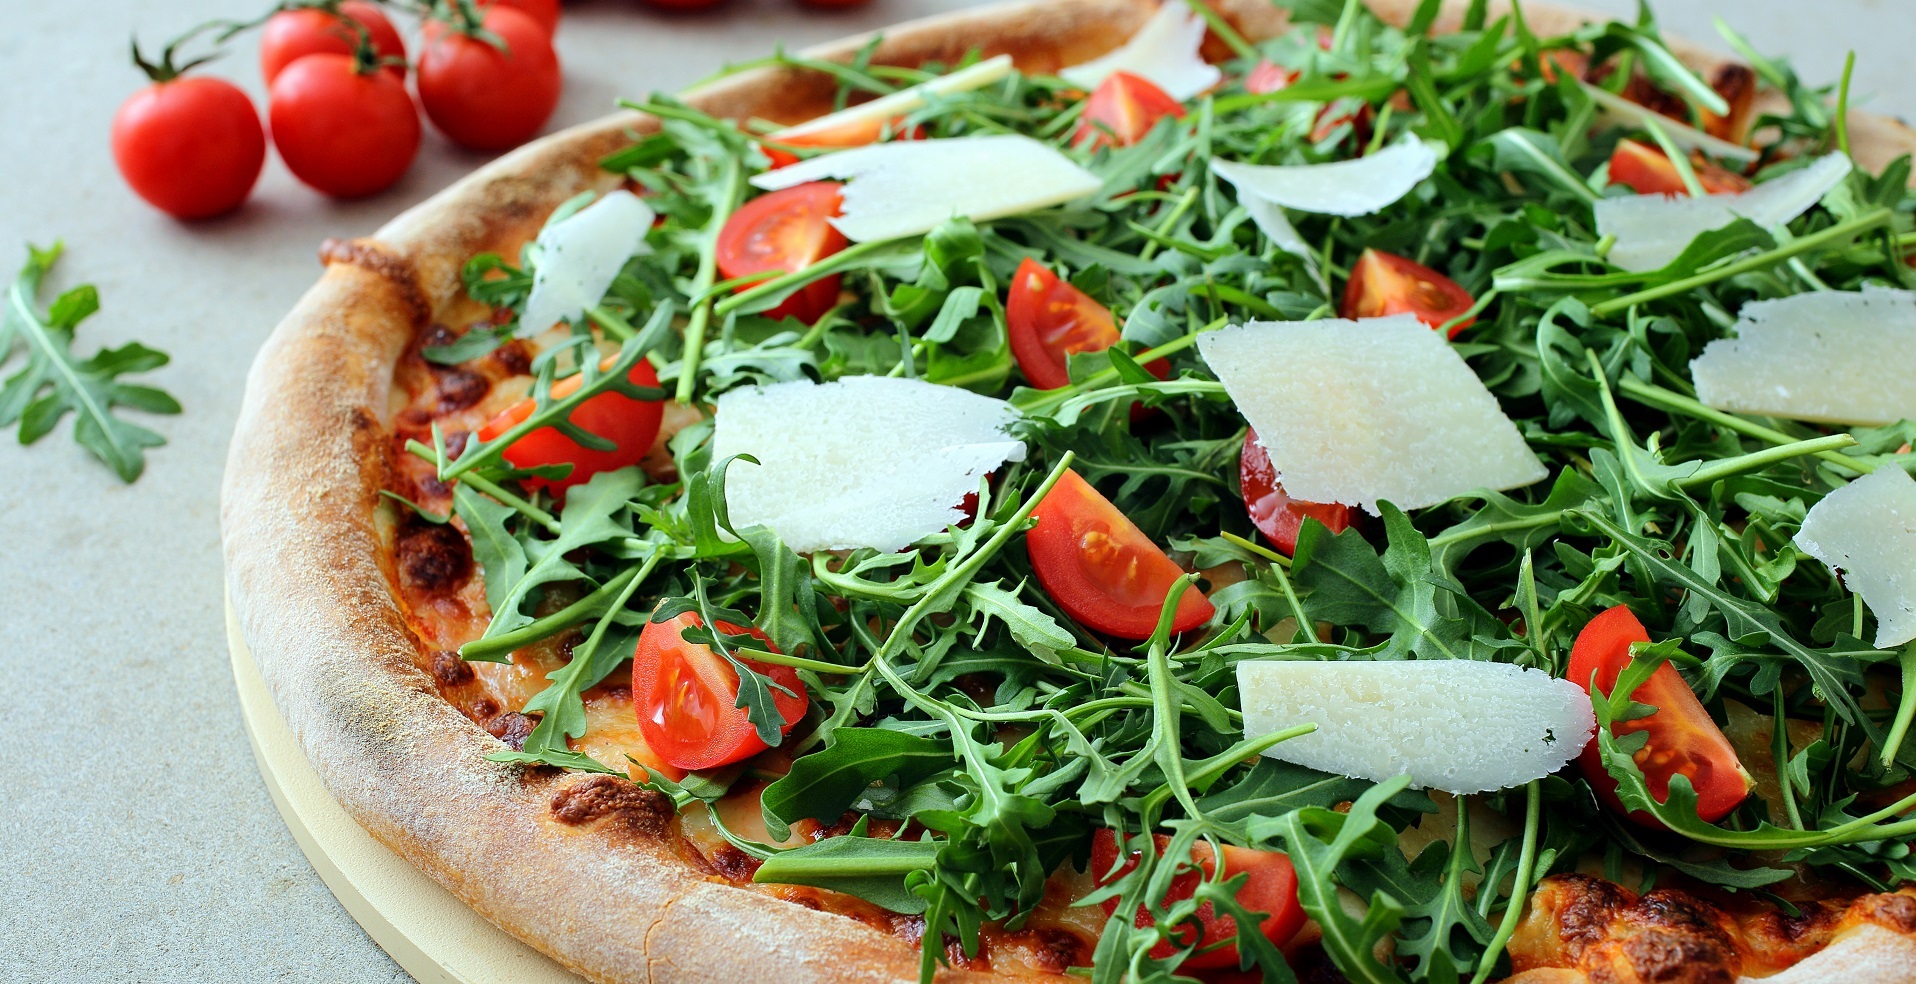 Seguendo questi suggerimenti, la pizza fa bene al cuore: una pratica curativa